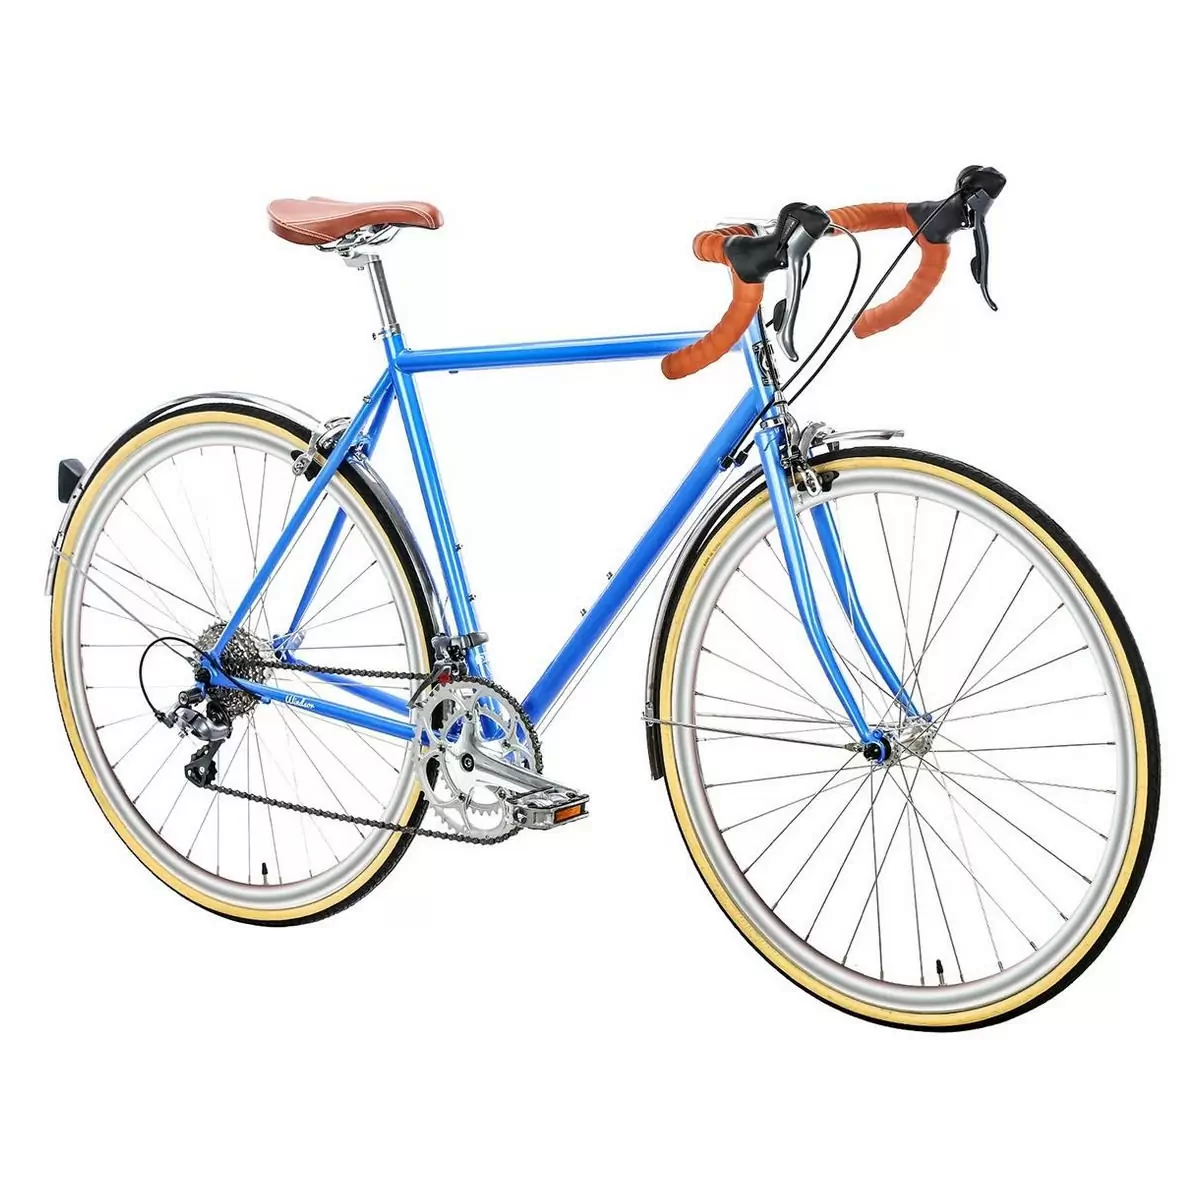 Bicicleta urbana TROY 16spd azul windsor pequena 49cm #1